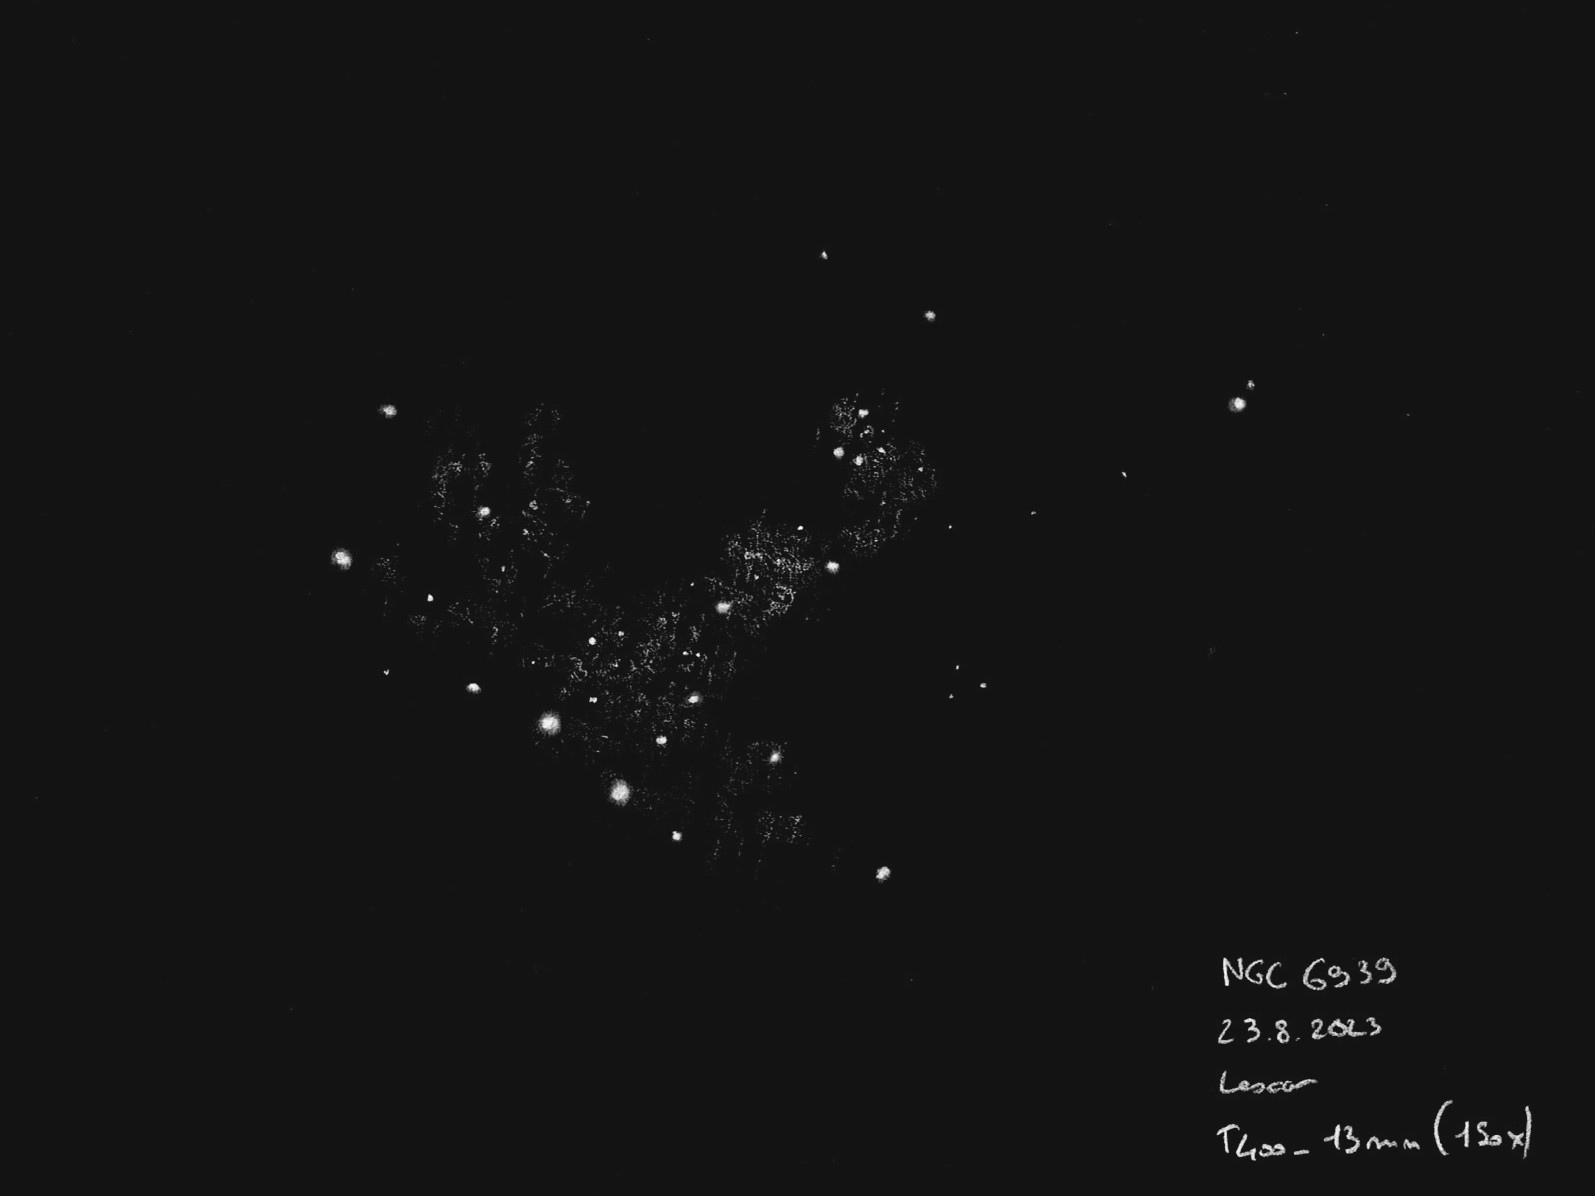 64ea7a16a6212_NGC69392023_08_23.jpeg.556b78b9a6f23053eff4ea4b18df106d.jpeg